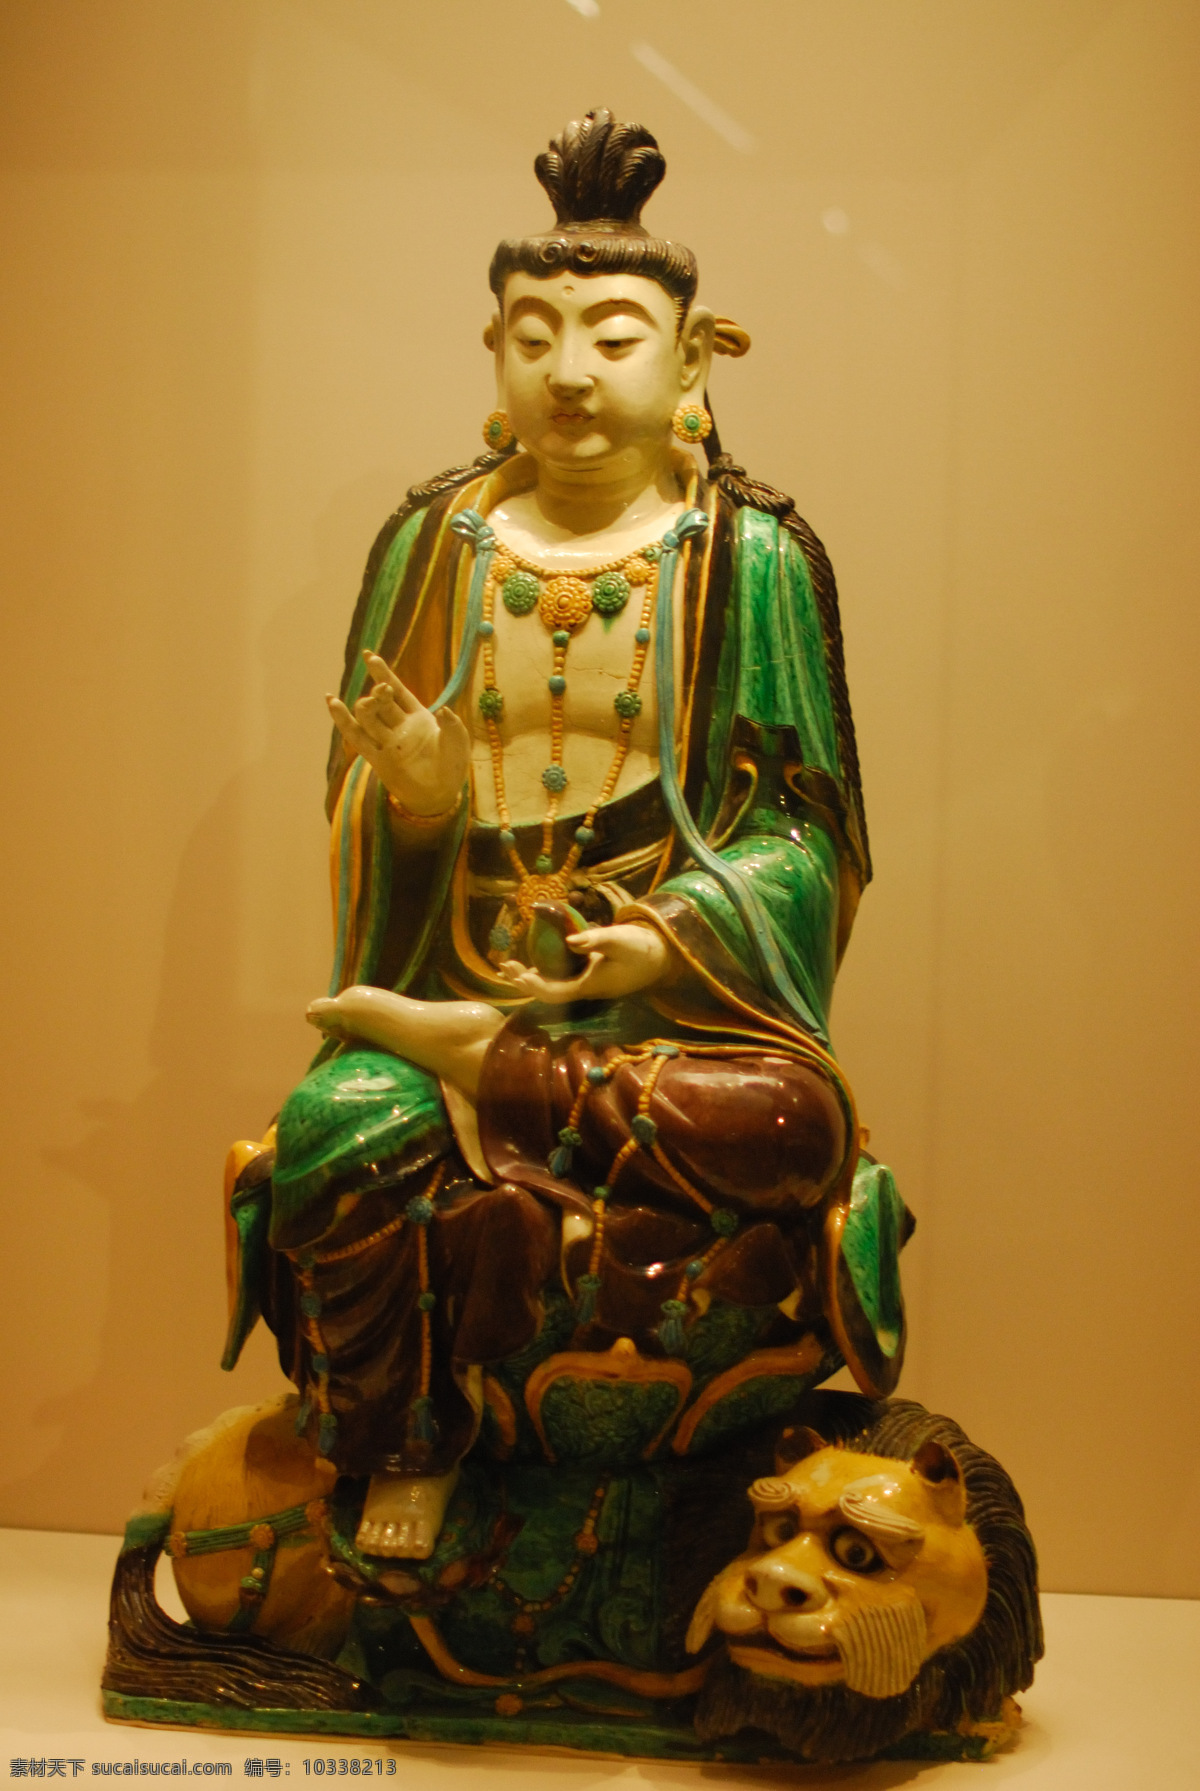 菩萨像 佛像 神像 天王 天神 雕像 石像 铜像 国宝 博物馆 收藏 珍宝 文殊菩萨 传统文化 文化艺术